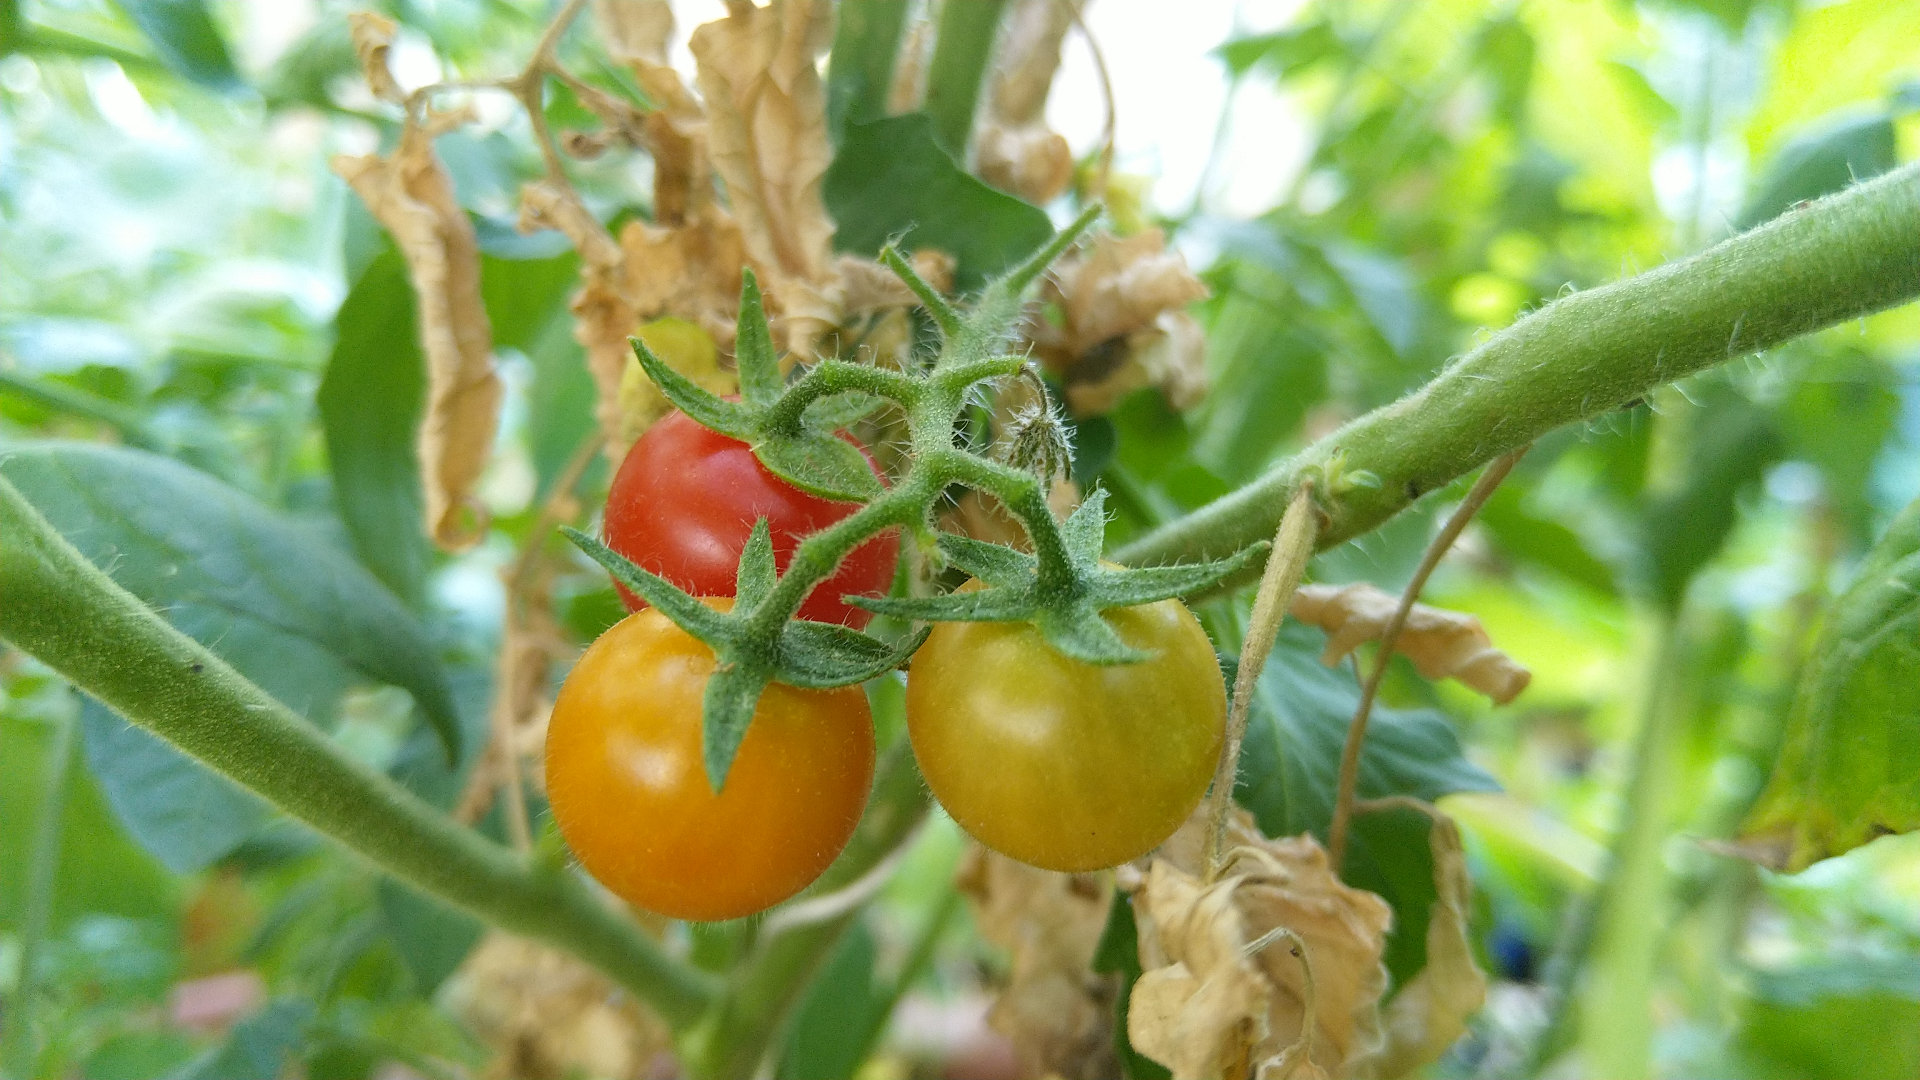 Comment cueillir les fruits et les légumes sans abîmer la plante ? (#tomate)